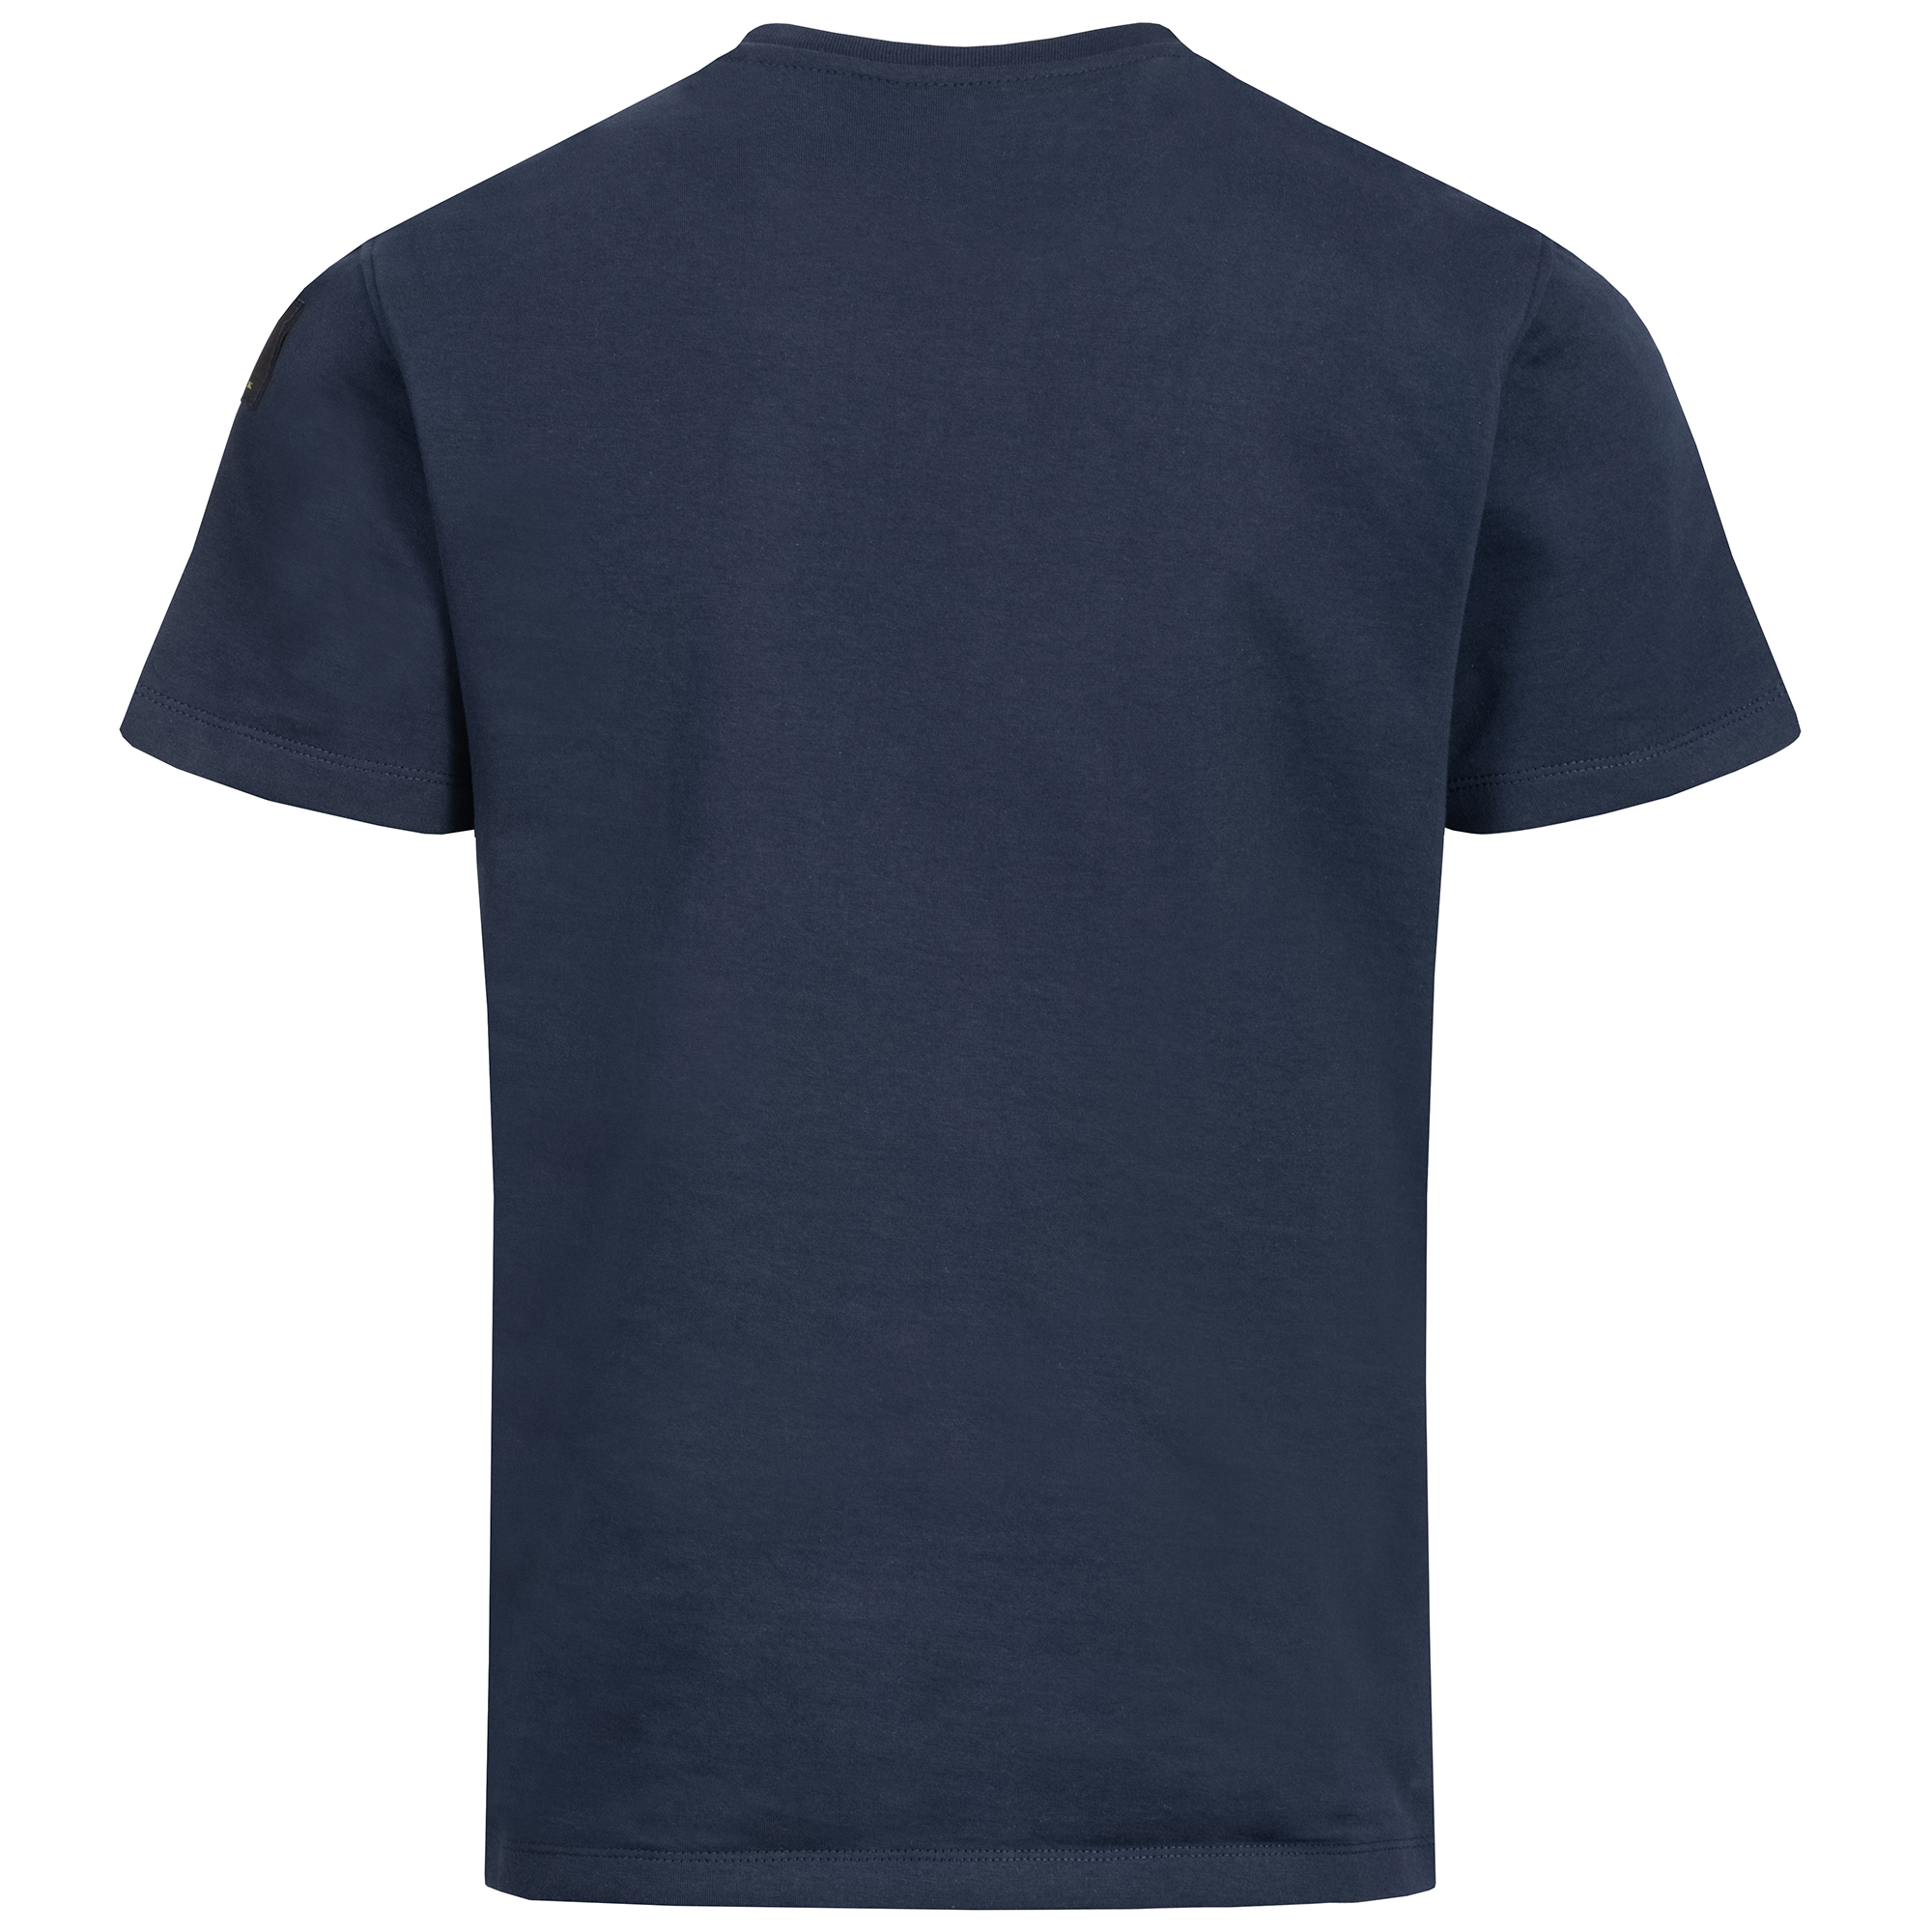 7XL vorhanden Schnittschutz-T-Shirt Level 5 sehr hoher Schutz Groessen 3XL 